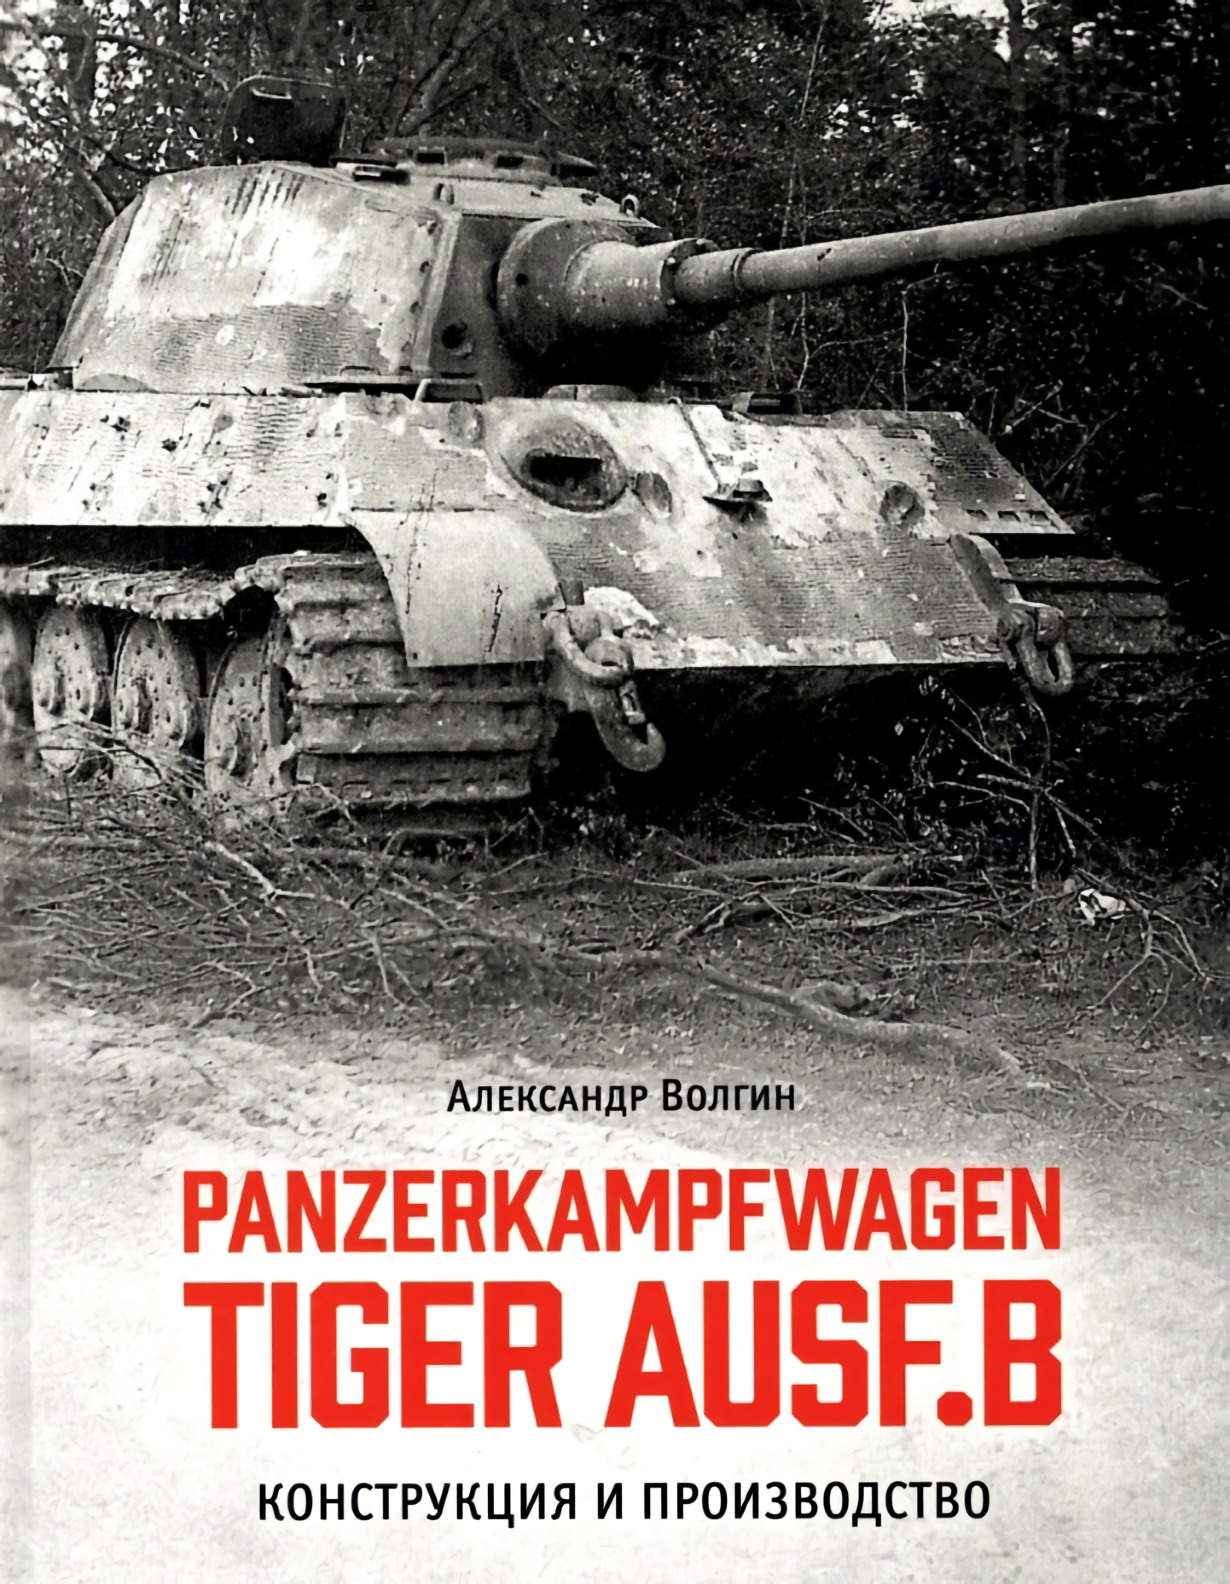 Волгин Александр Panzerkampfwagen TIGER AUSF. B Конструкция и производство